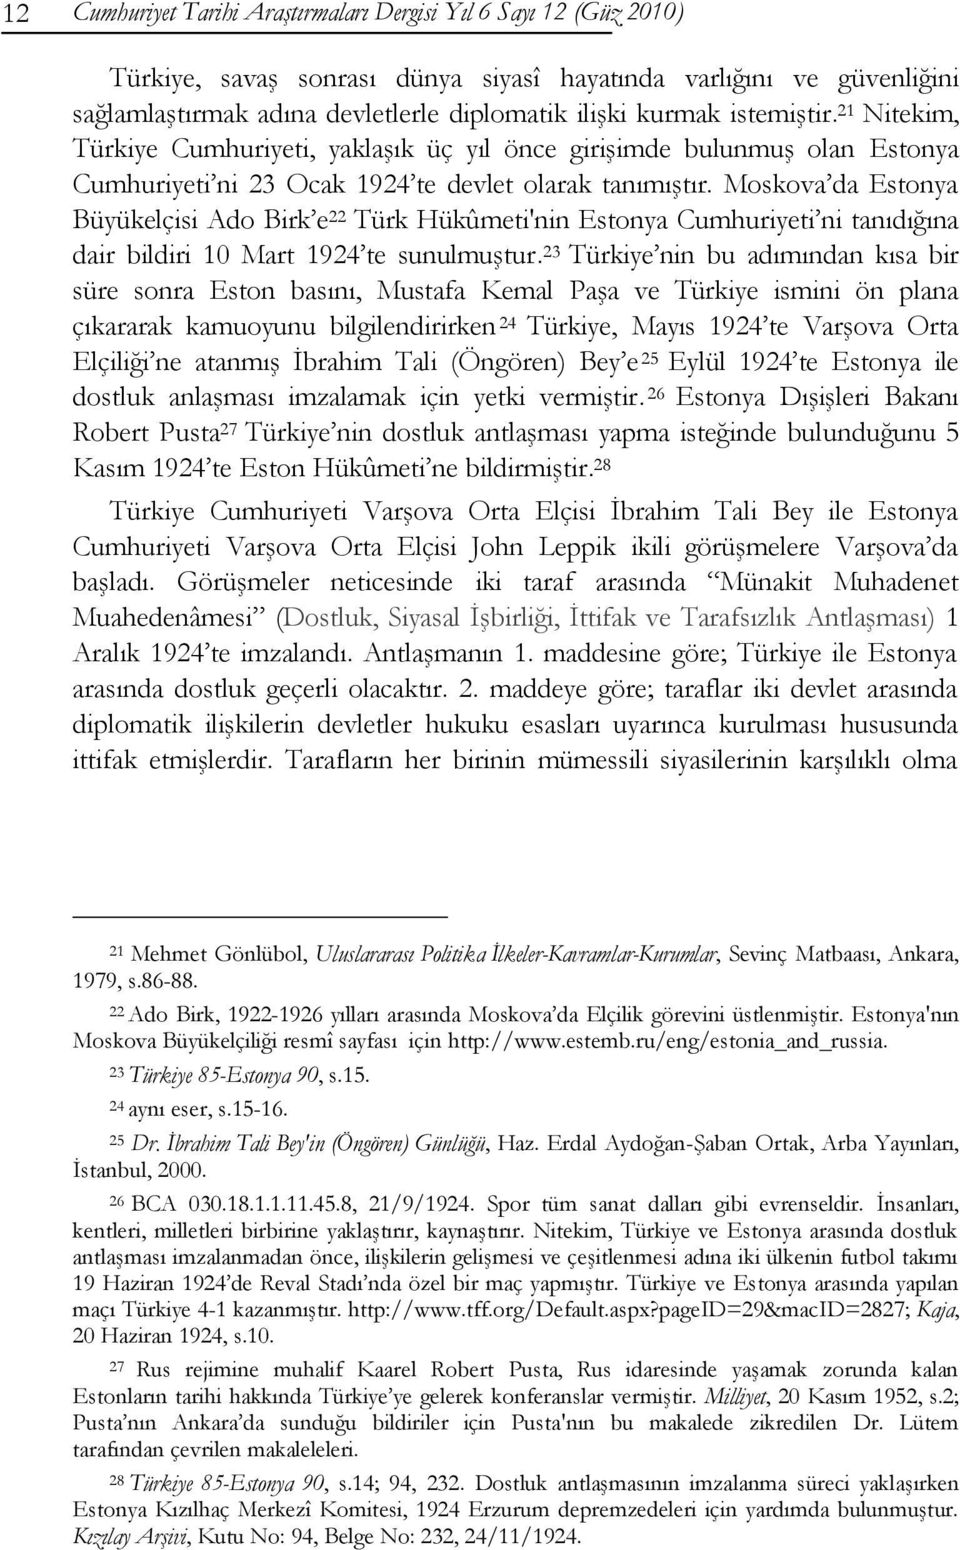 Moskova da Estonya Büyükelçisi Ado Birk e 22 Türk Hükûmeti'nin Estonya Cumhuriyeti ni tanıdığına dair bildiri 10 Mart 1924 te sunulmuģtur.